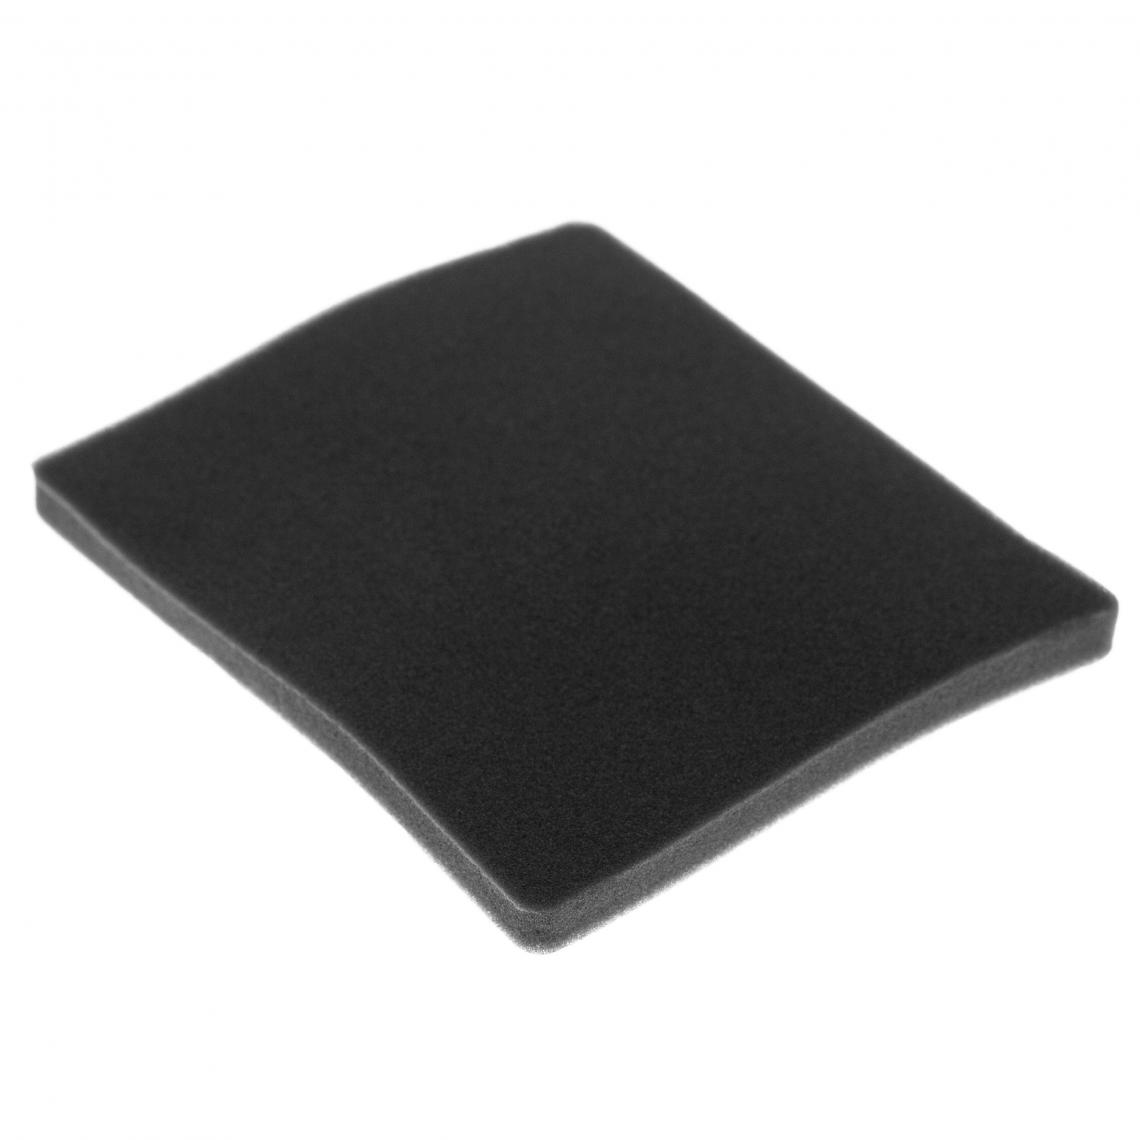 Vhbw - vhbw Filtre compatible avec Electrolux ZJM6820KRH (903151713) aspirateur - filtre de sortie d'air (filtre éponge), noir - Accessoire entretien des sols